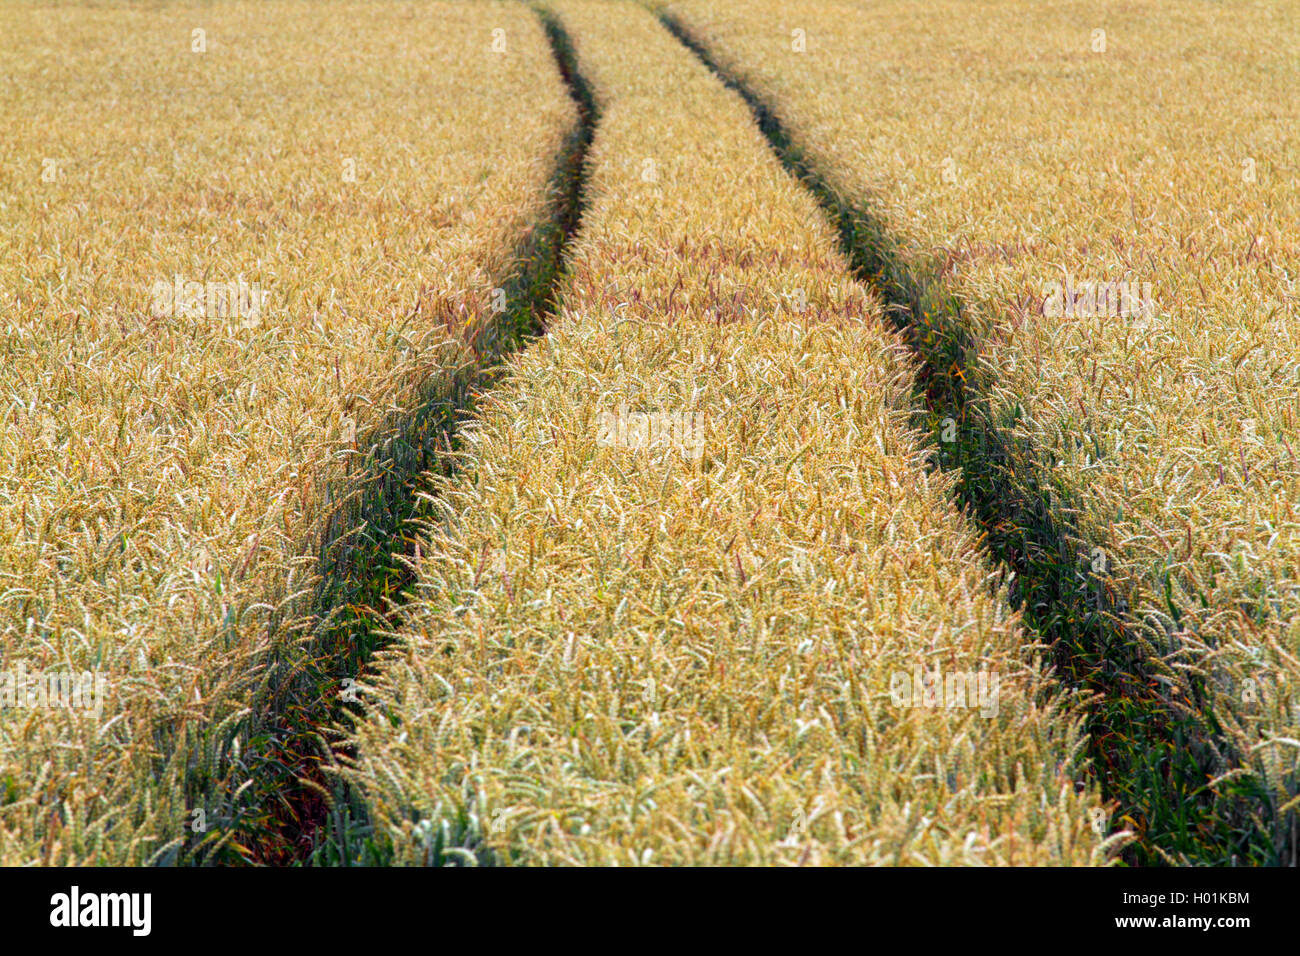 Saat-Weizen, Saatweizen, Weich-Weizen, Weichweizen, Weizen (Triticum aestivum) en einem unkrautfreien Traktorspuren Weizenfeld, Foto de stock